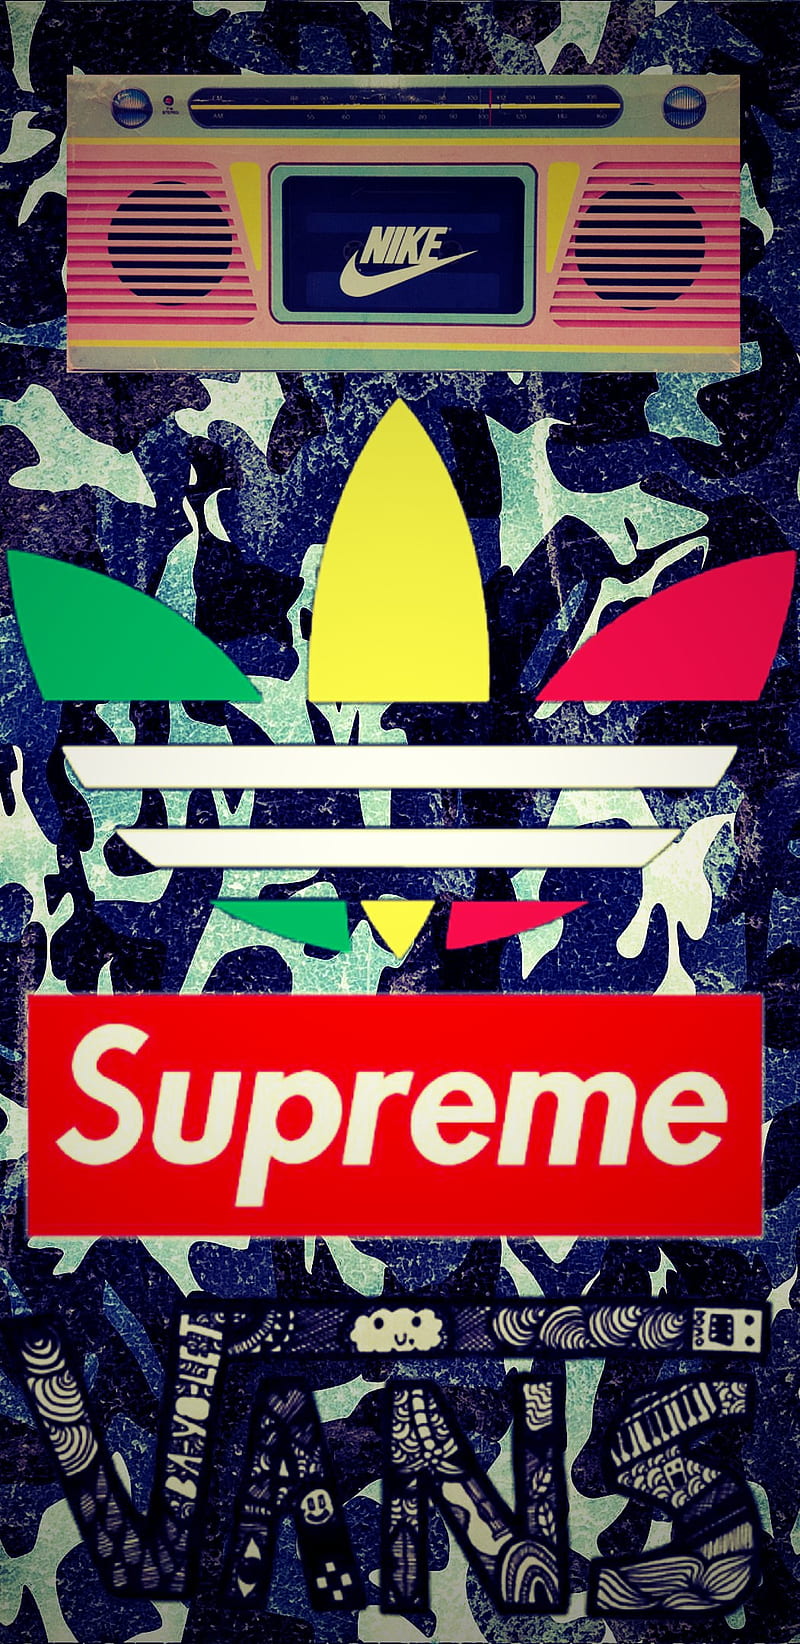 Supreme x adidas HD wallpapers